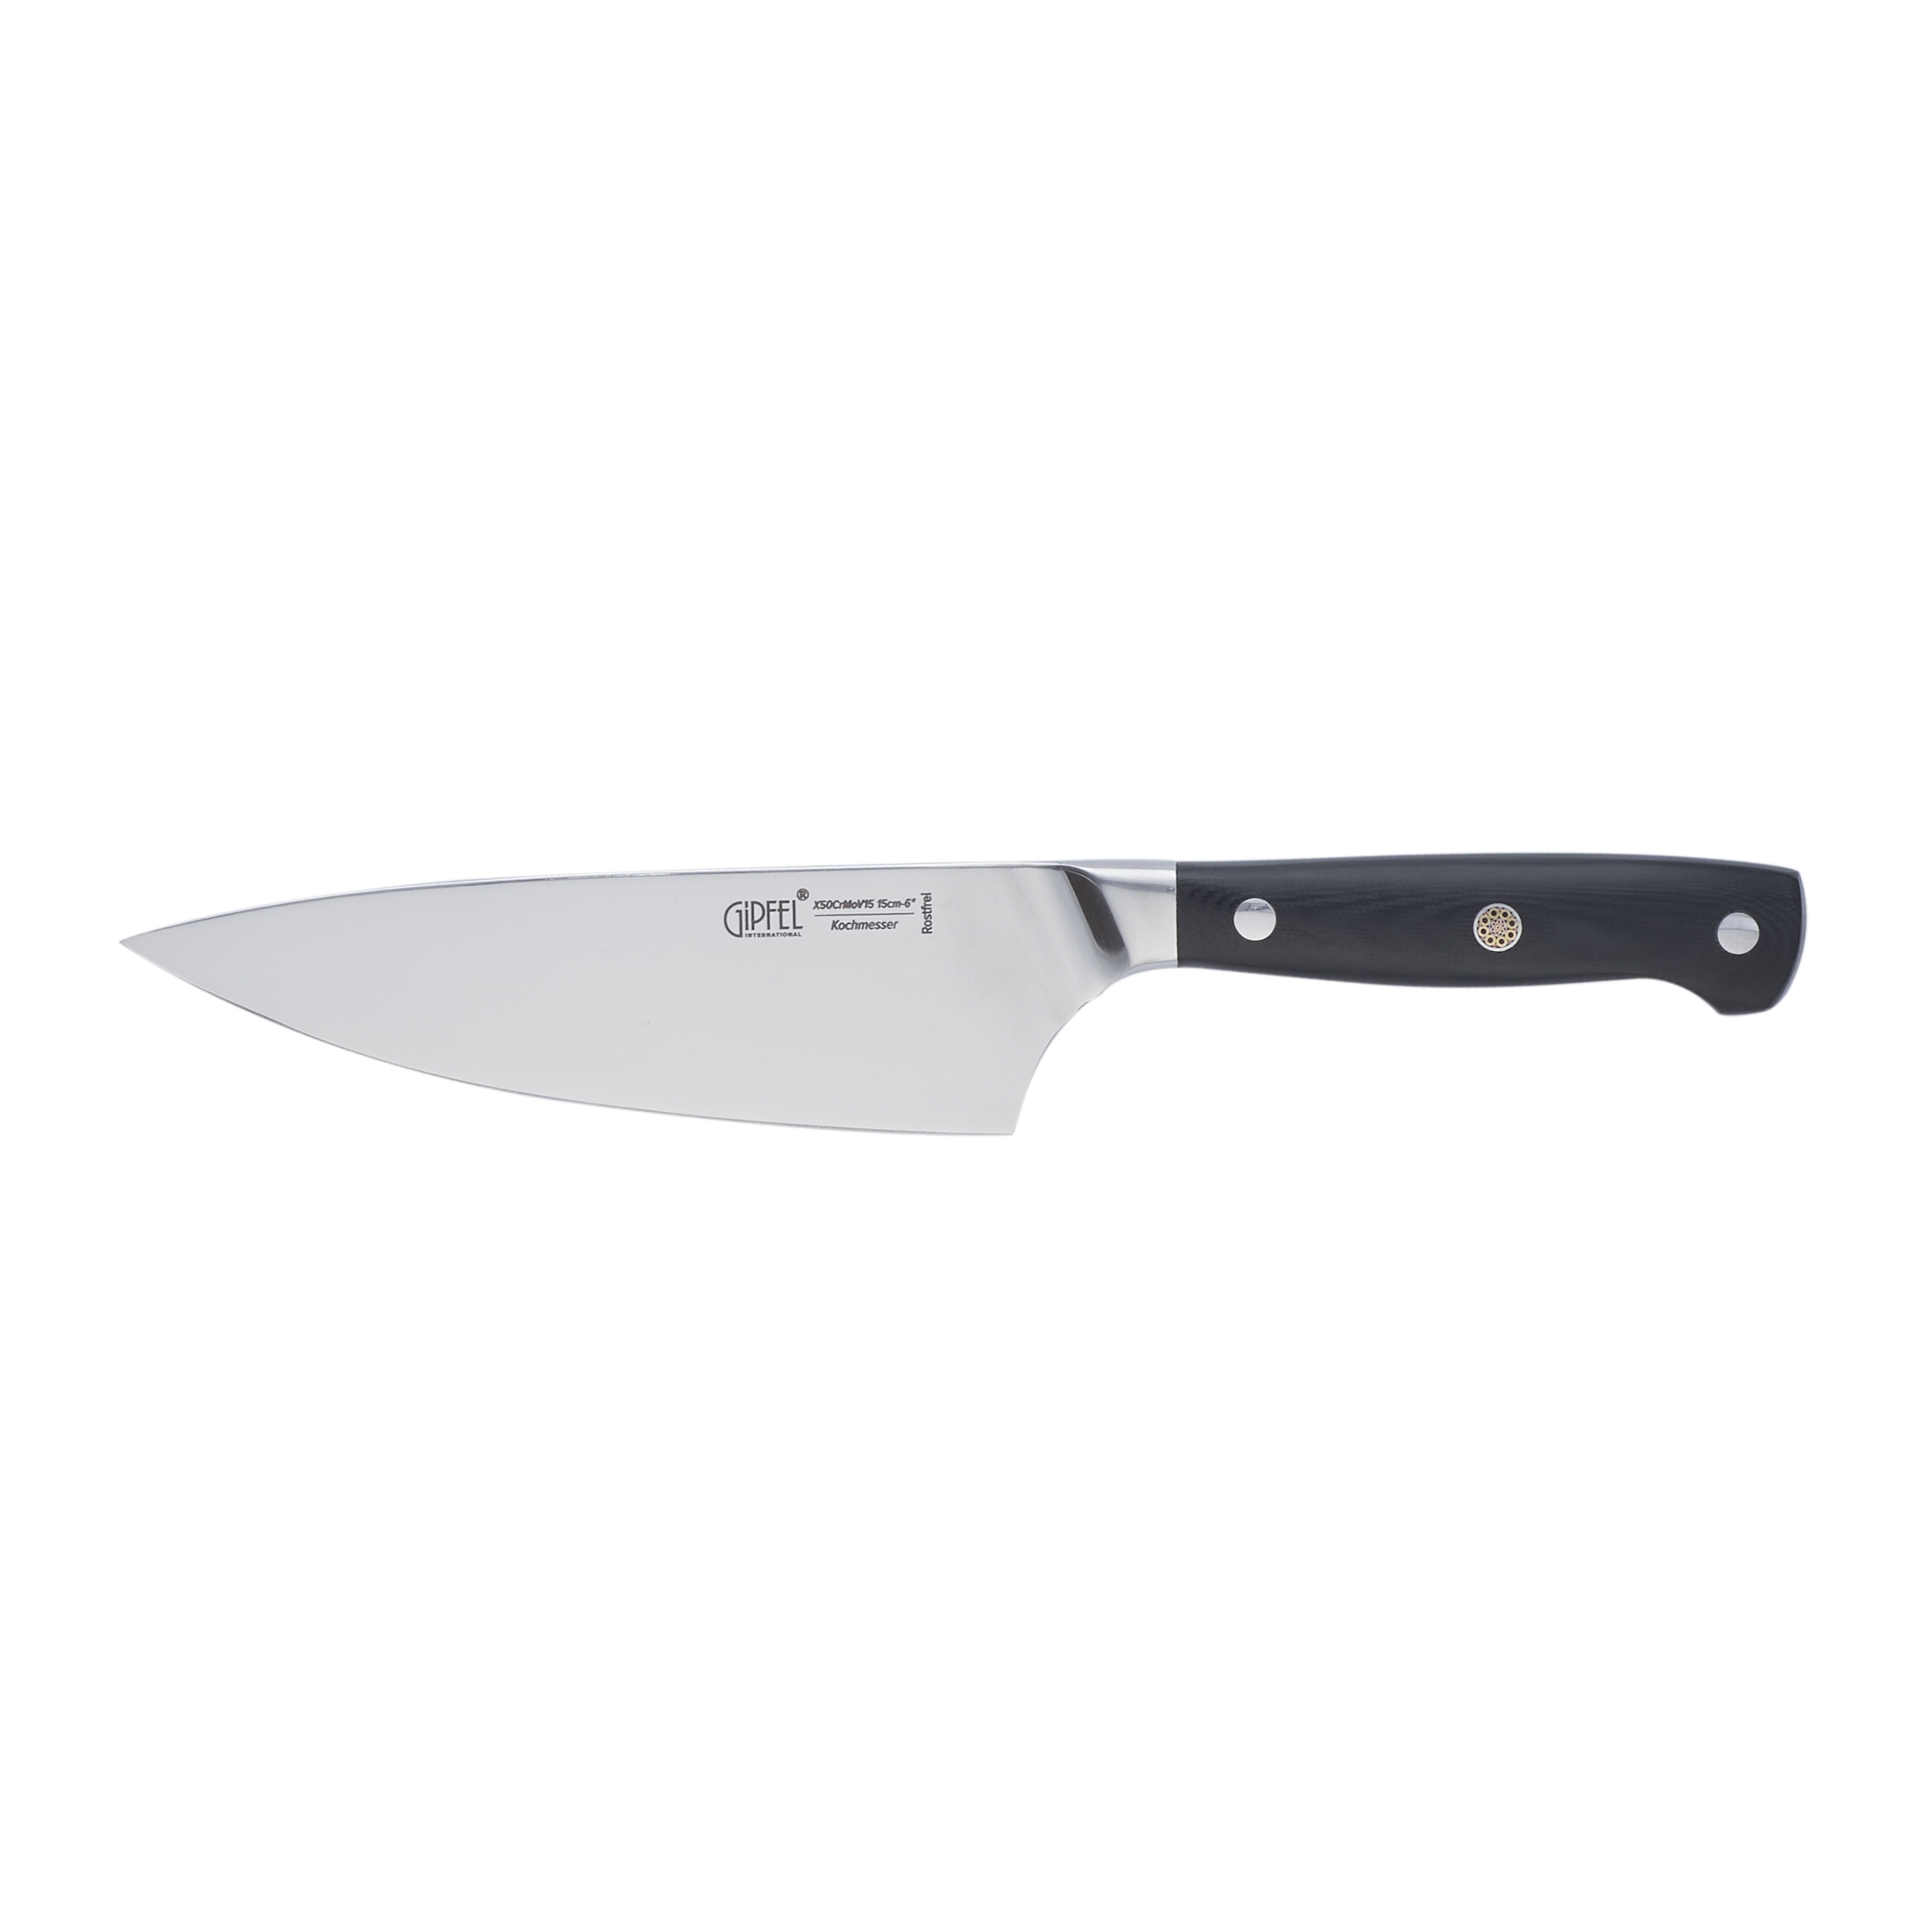 Нож поварской Gipfel New Professional 8648 15 см универсальный нож gipfel professional line 6720